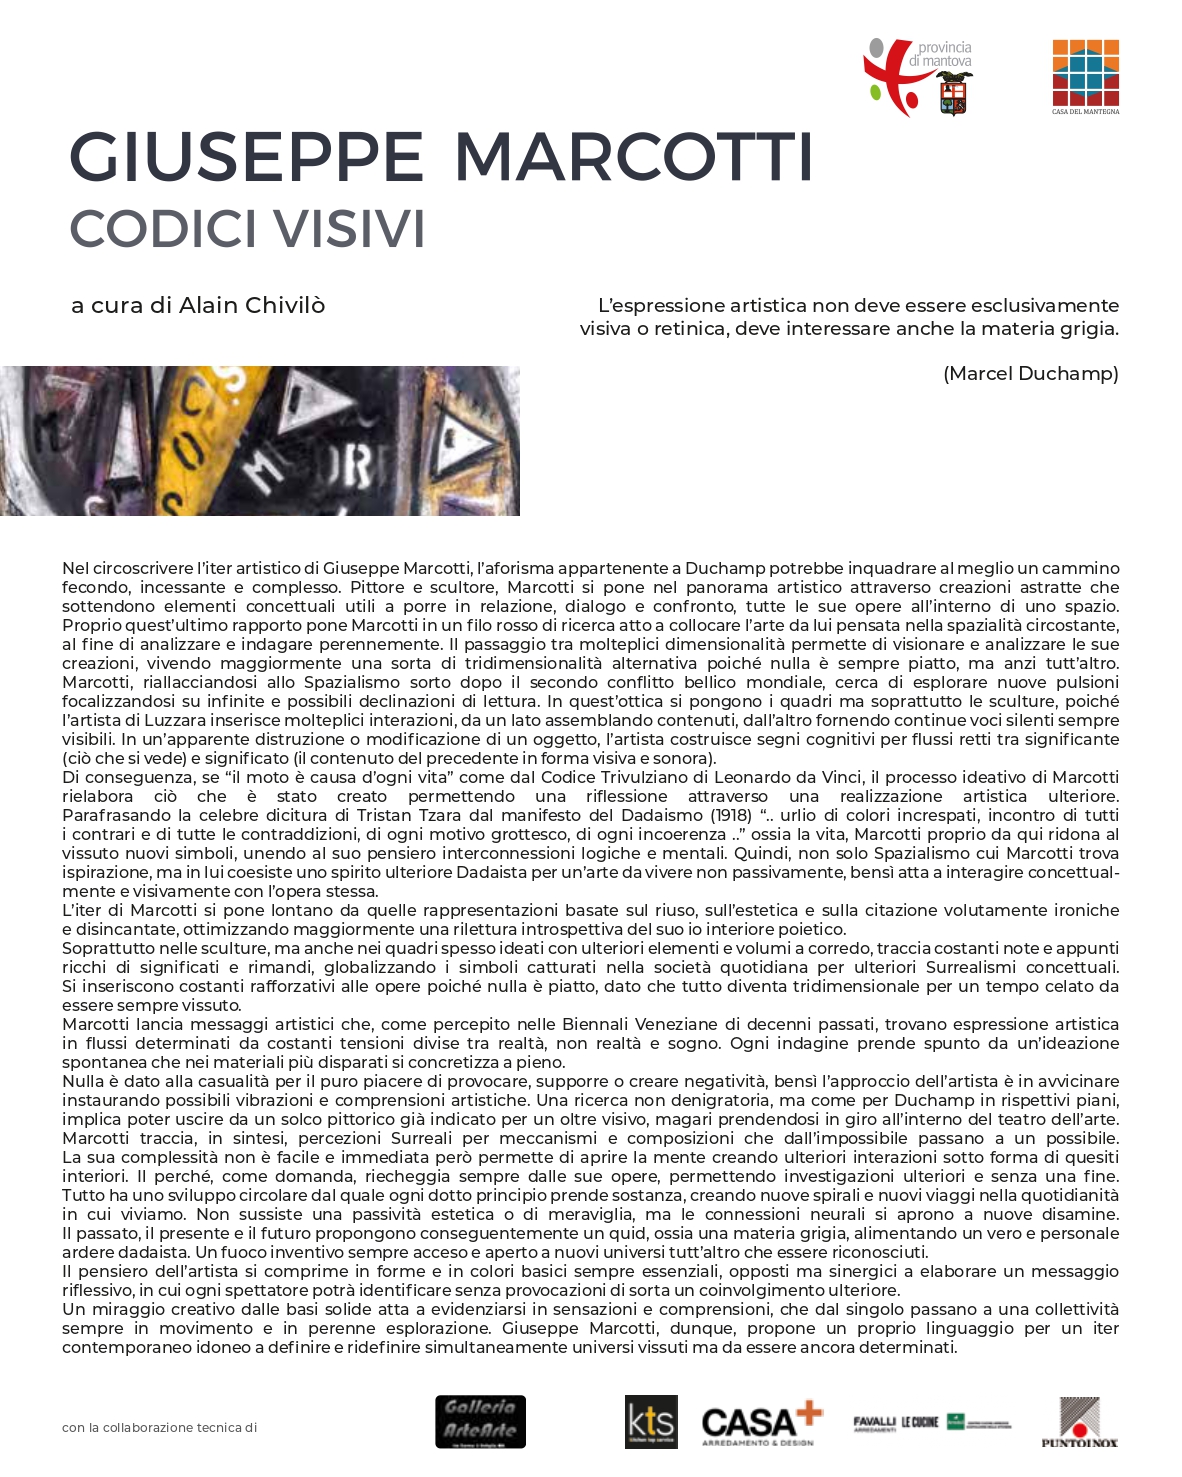 Colophone, band, Giuseppe Marcotti, Codici Visivi, a cura di Alain Chivilò